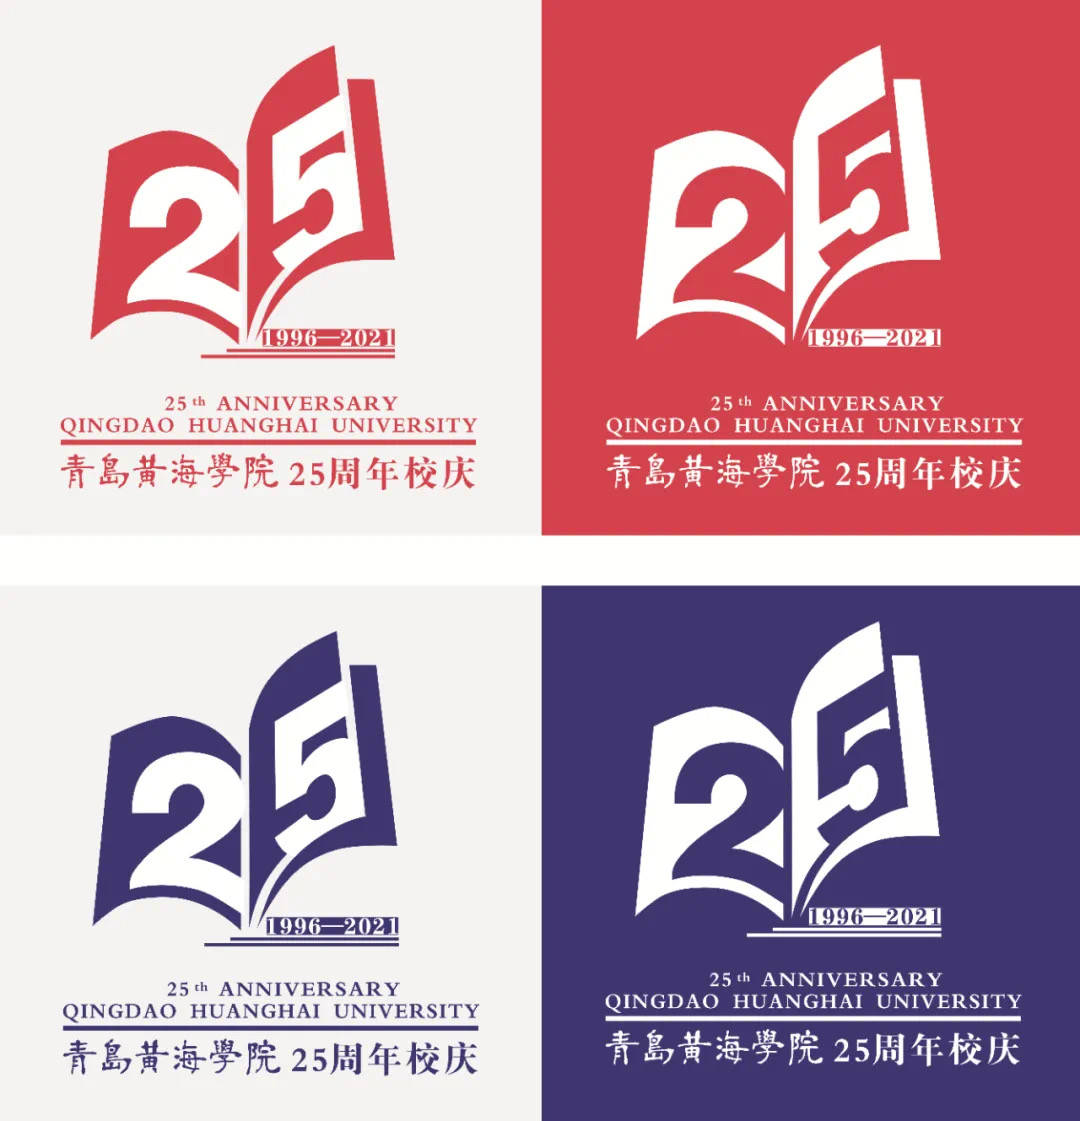 青岛黄海学院25周年校庆logo票选开始啦